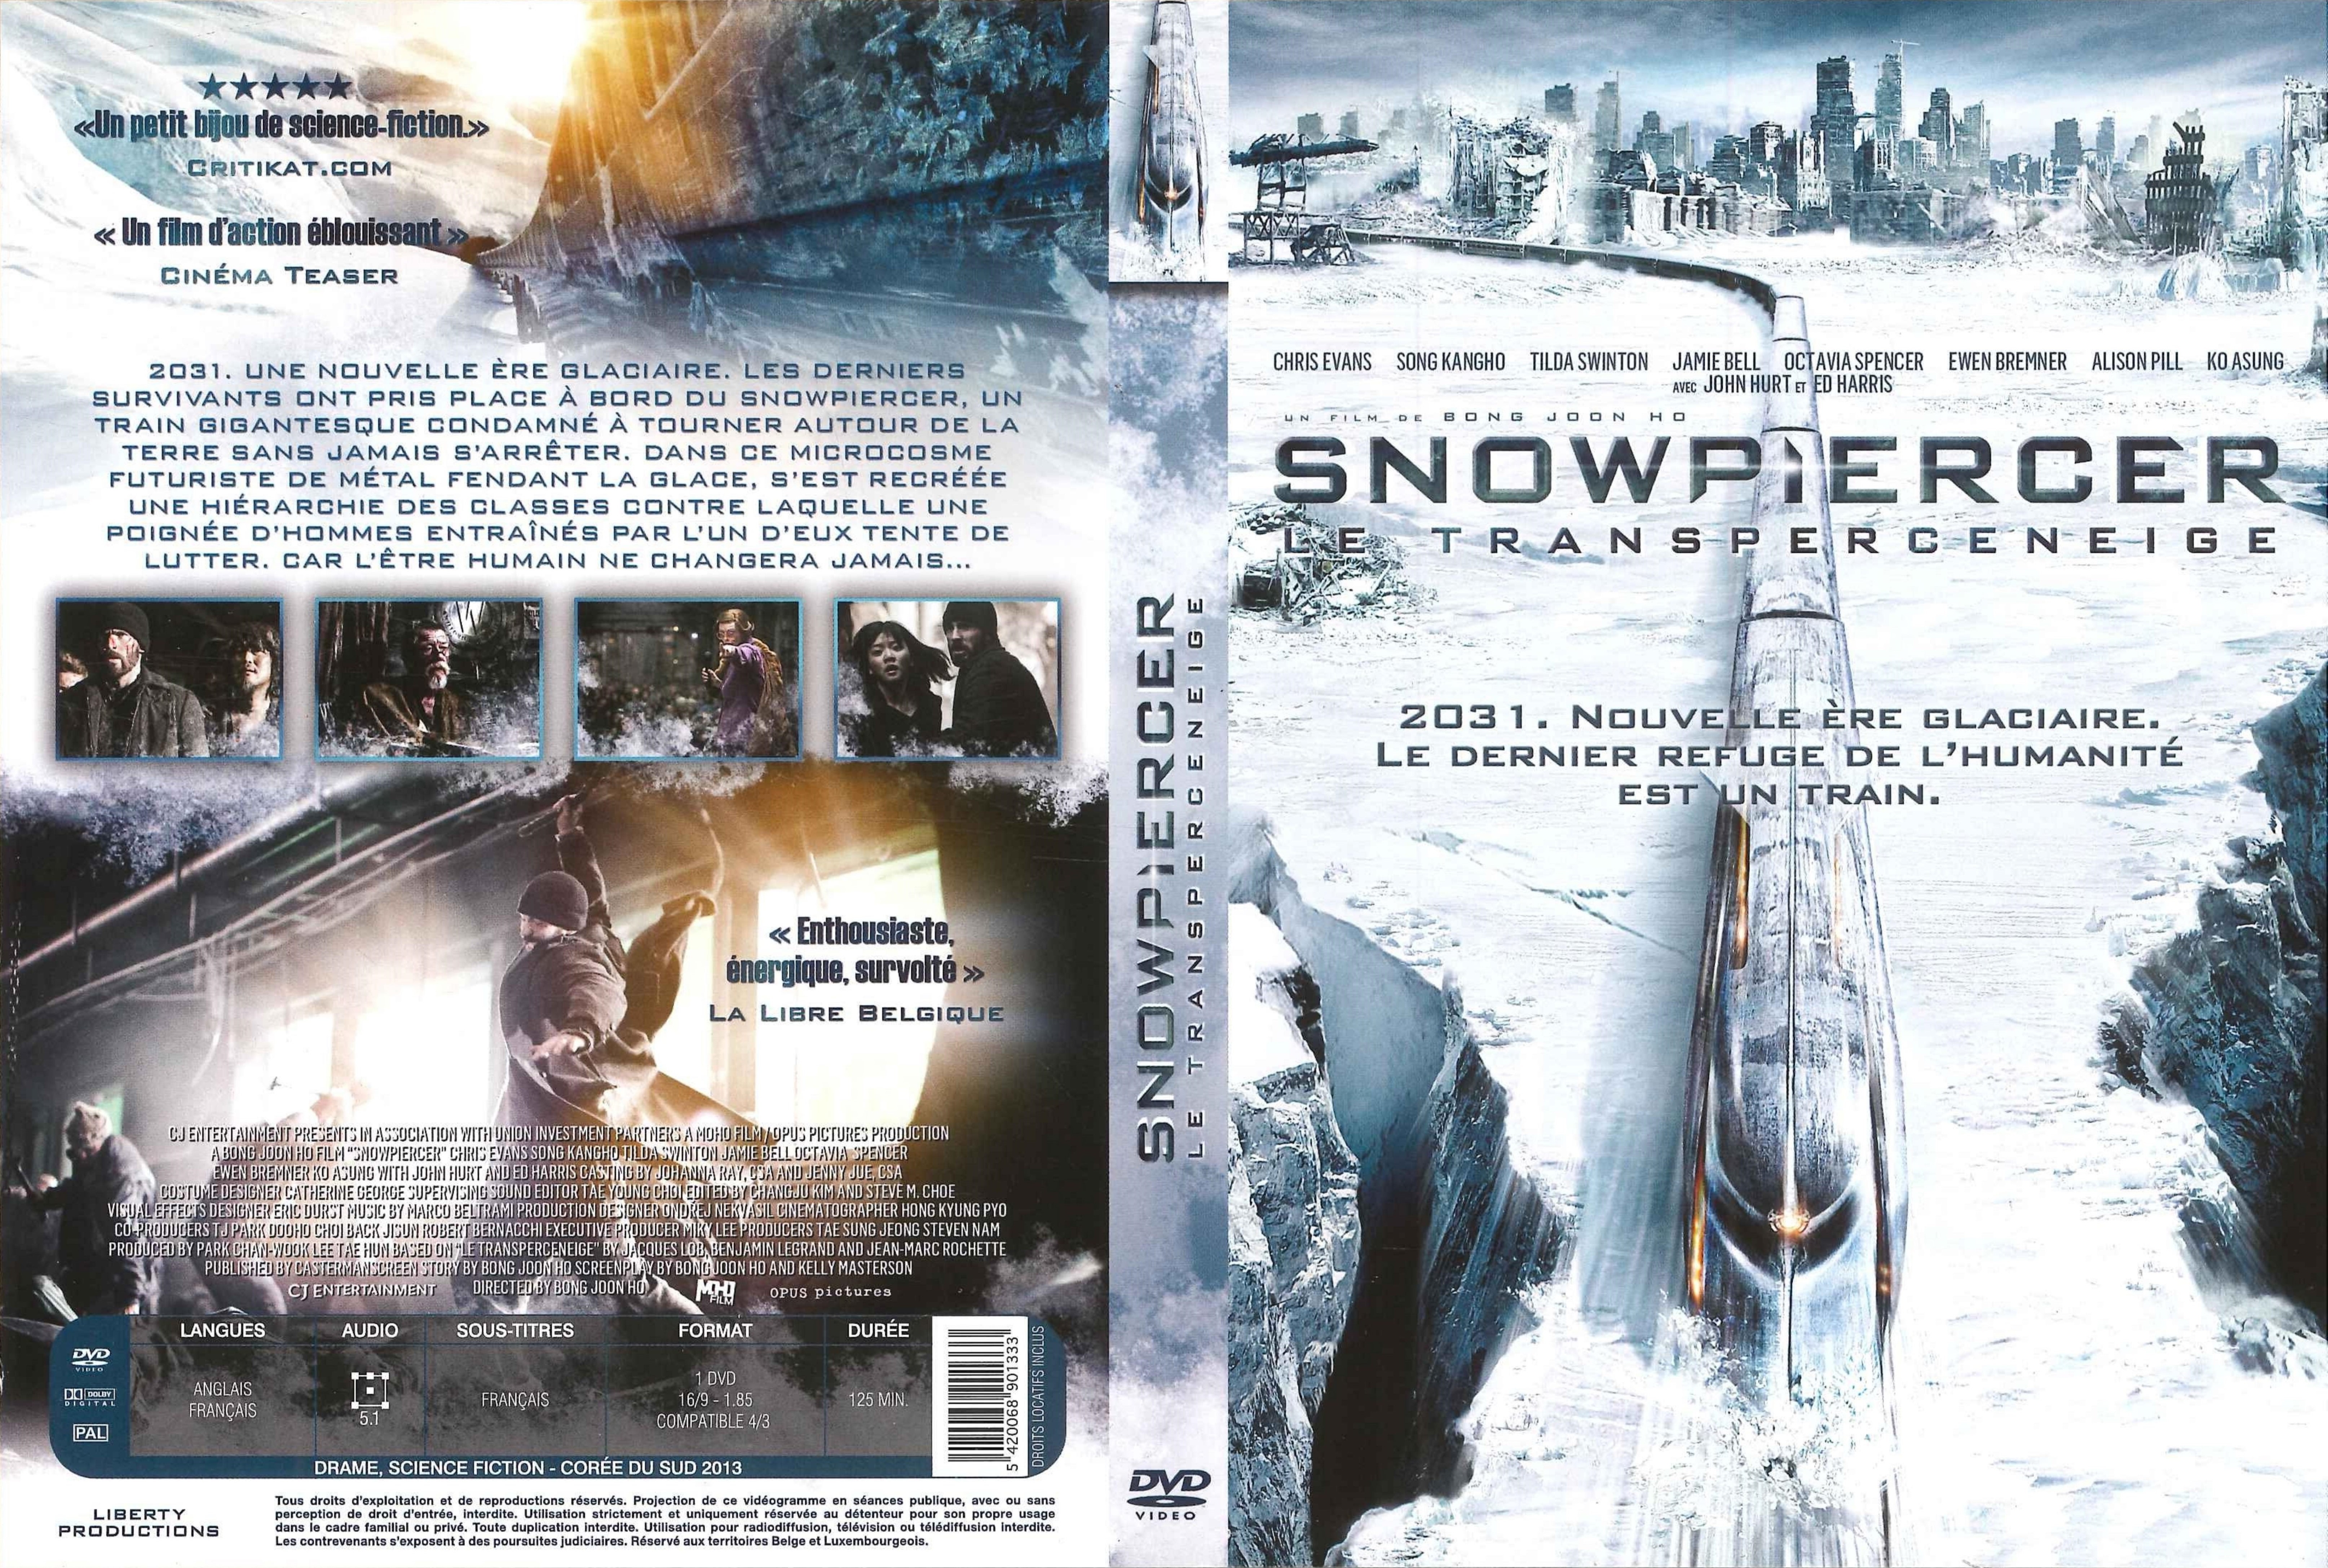 Jaquette DVD Snowpiercer, Le Transperceneige v3